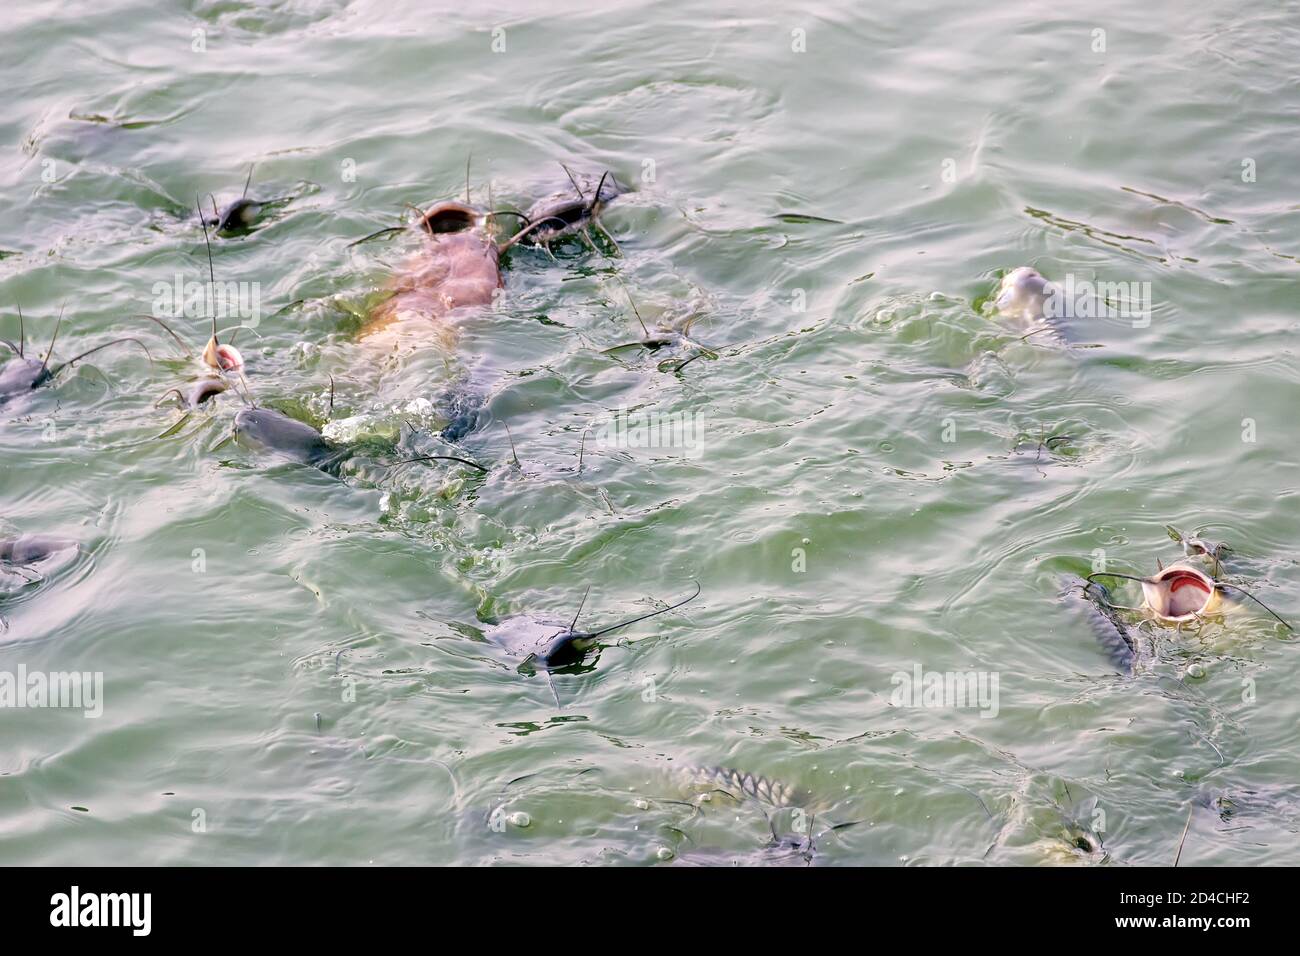 Le poisson-chat marchant (Clarias batrachus) se nourrit à la surface d'eau très boueuse, d'habitats pauvres en oxygène. Étangs de poisson et produits de poisson, élevés en PO cérémonial Banque D'Images